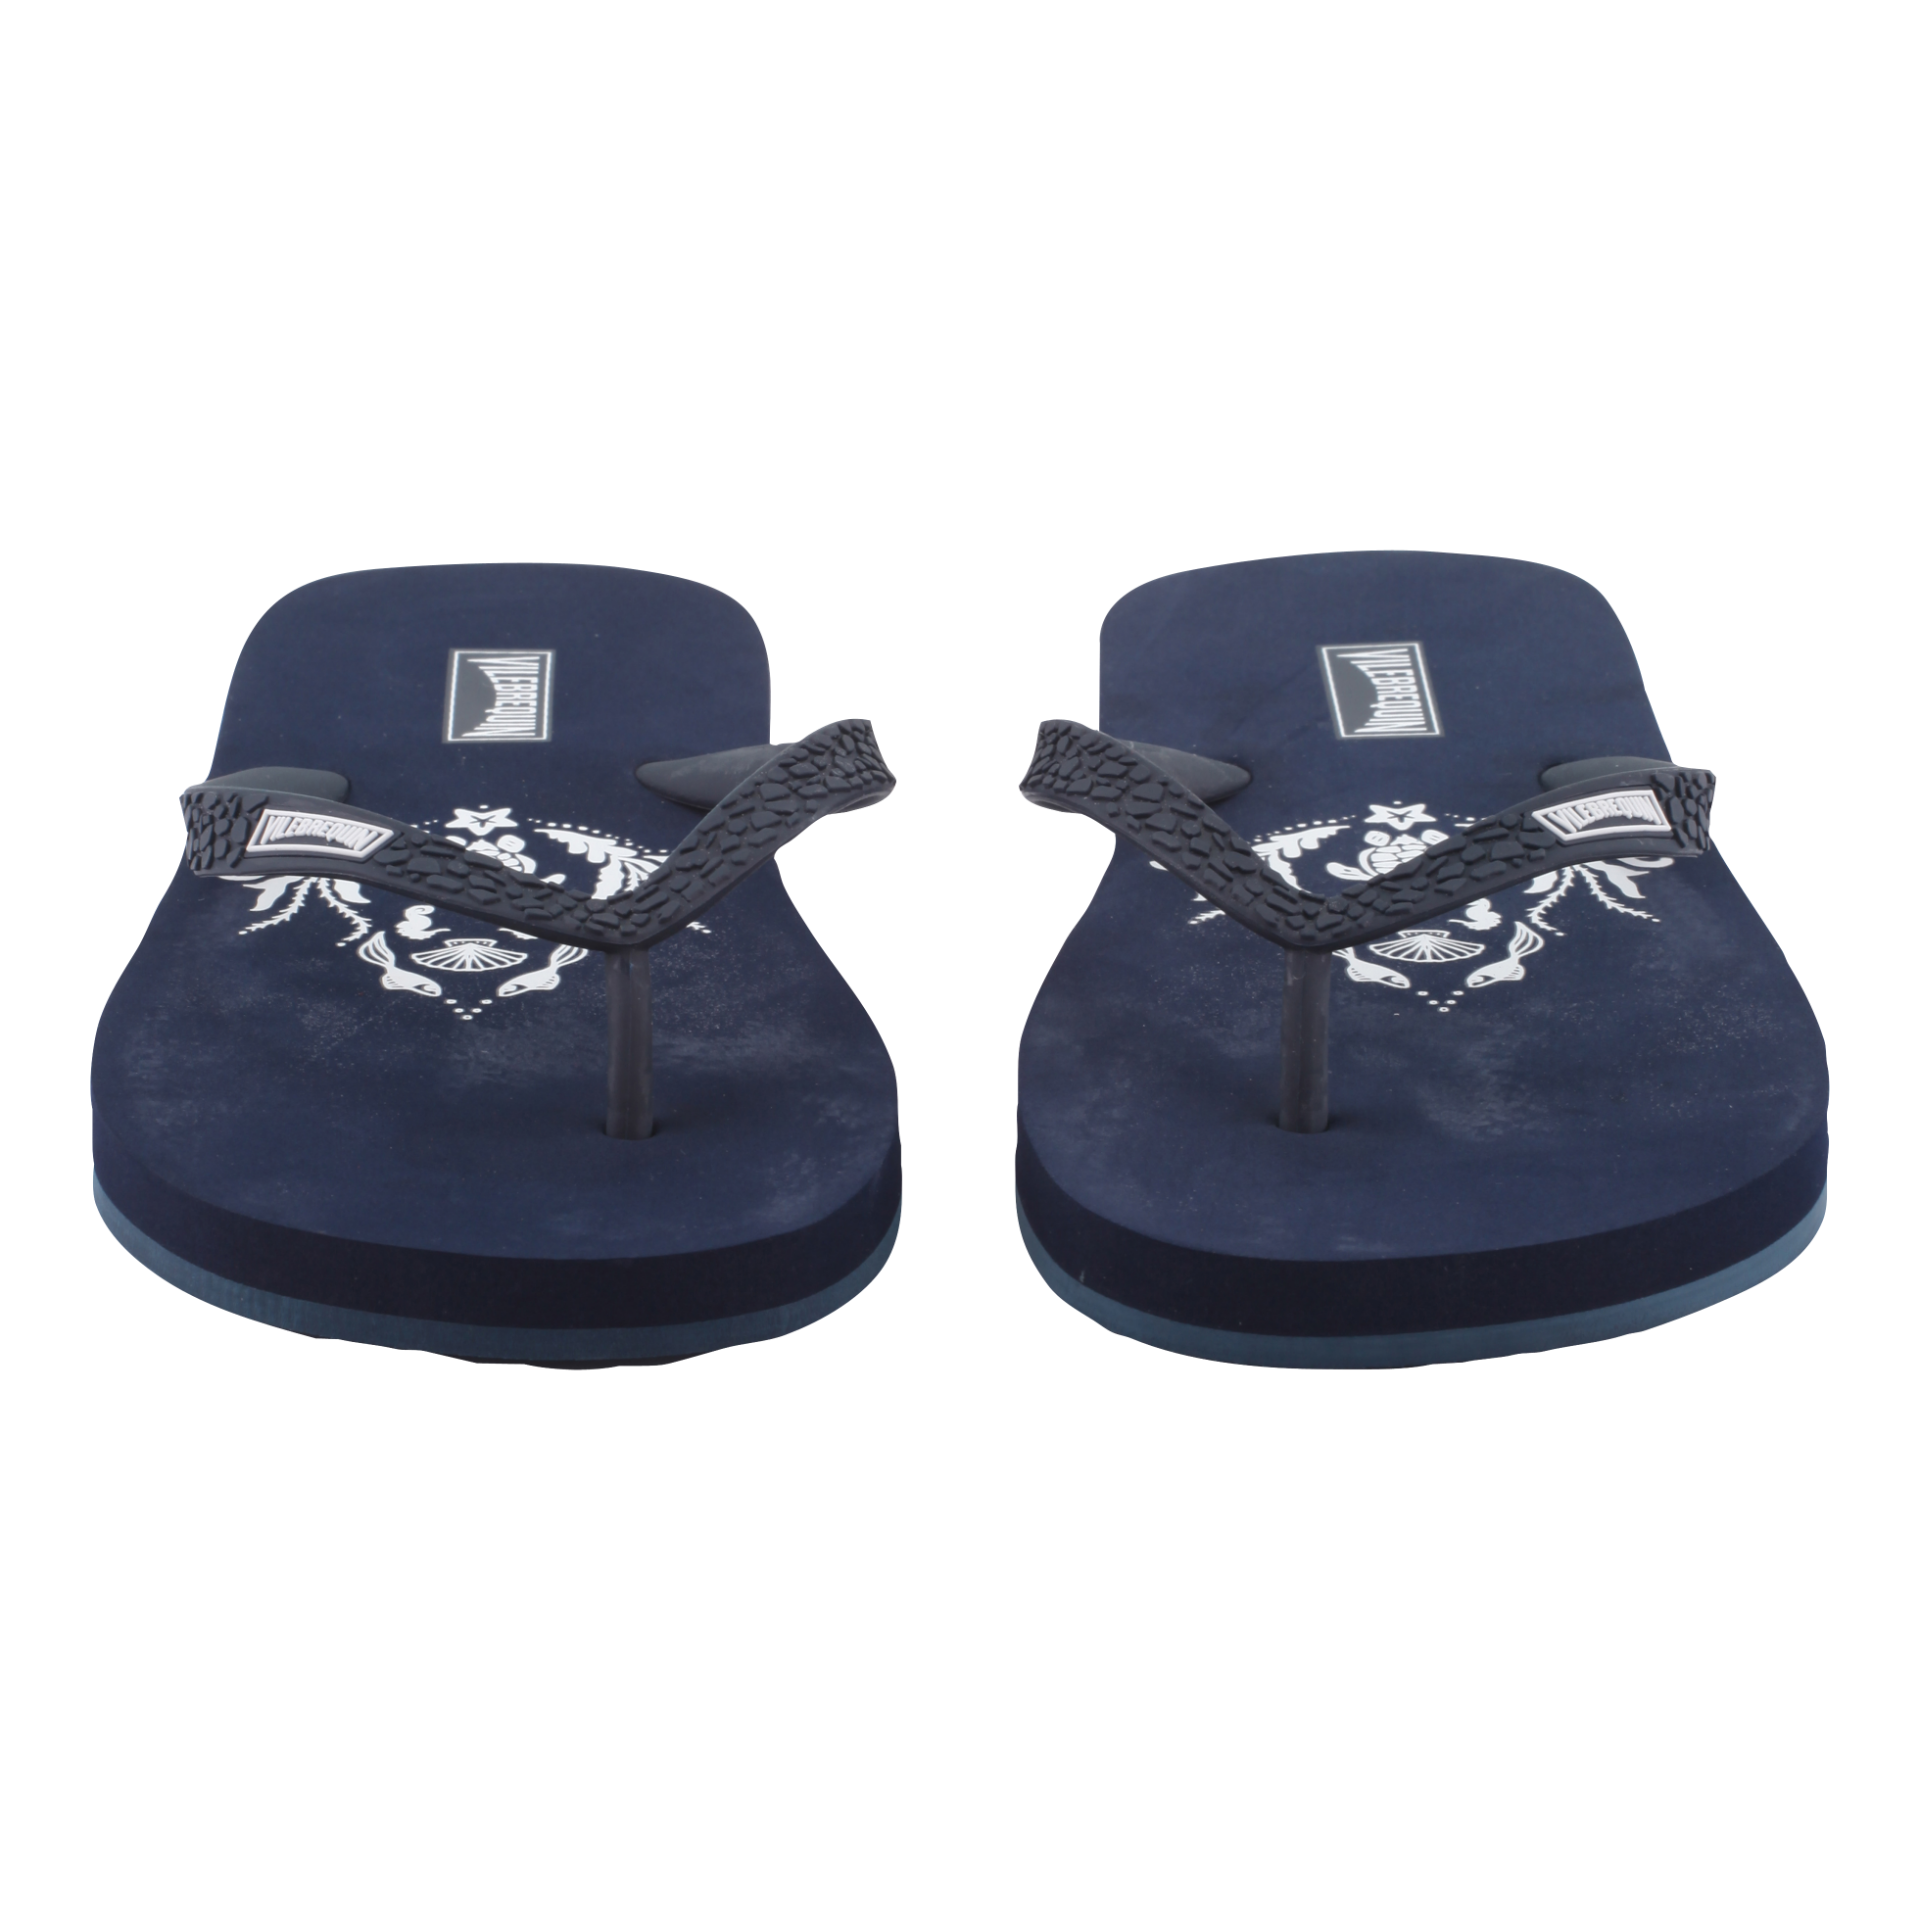 VILEBREQUIN Flip Flops Navy - Authentic & New - Size 4 / 5 - RRP Â£65+ ! - Image 4 of 5